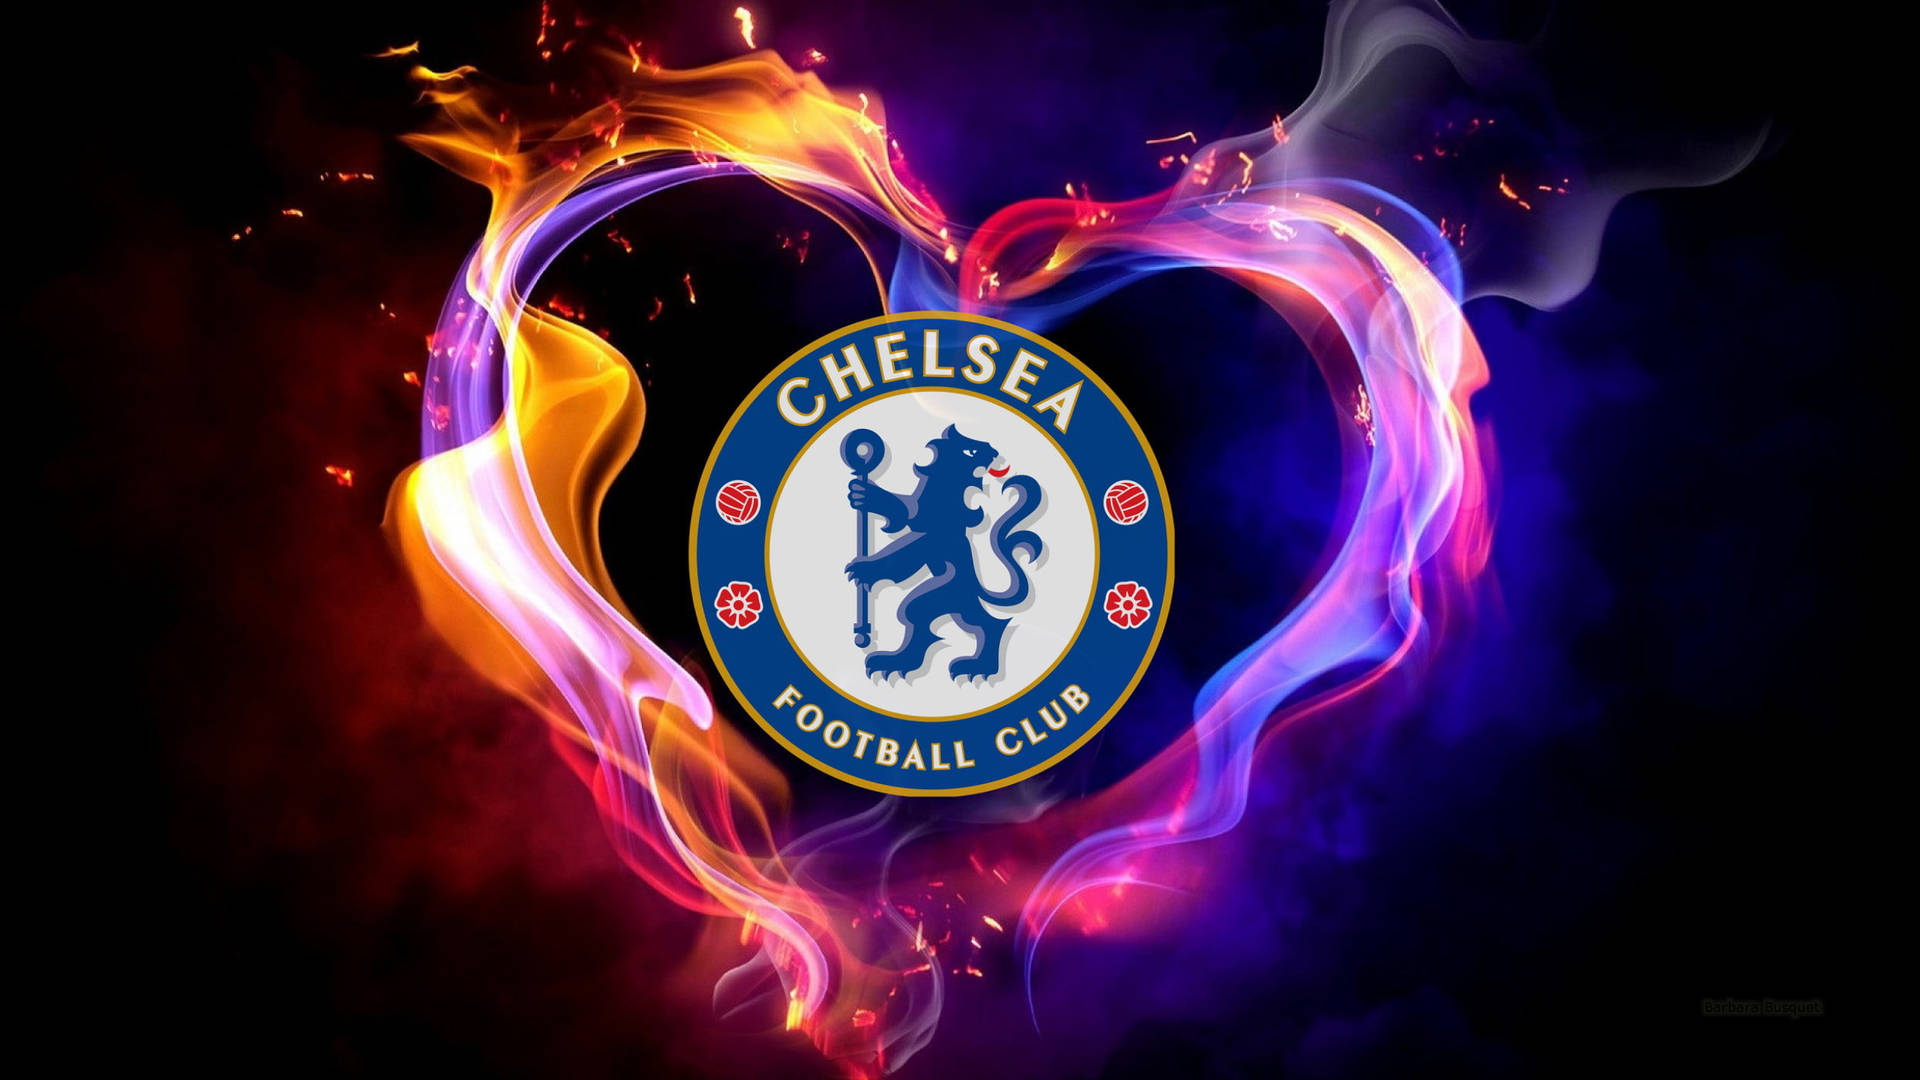 Papelde Parede Digital Com O Logo Do Chelsea Em Forma De Coração. Papel de Parede